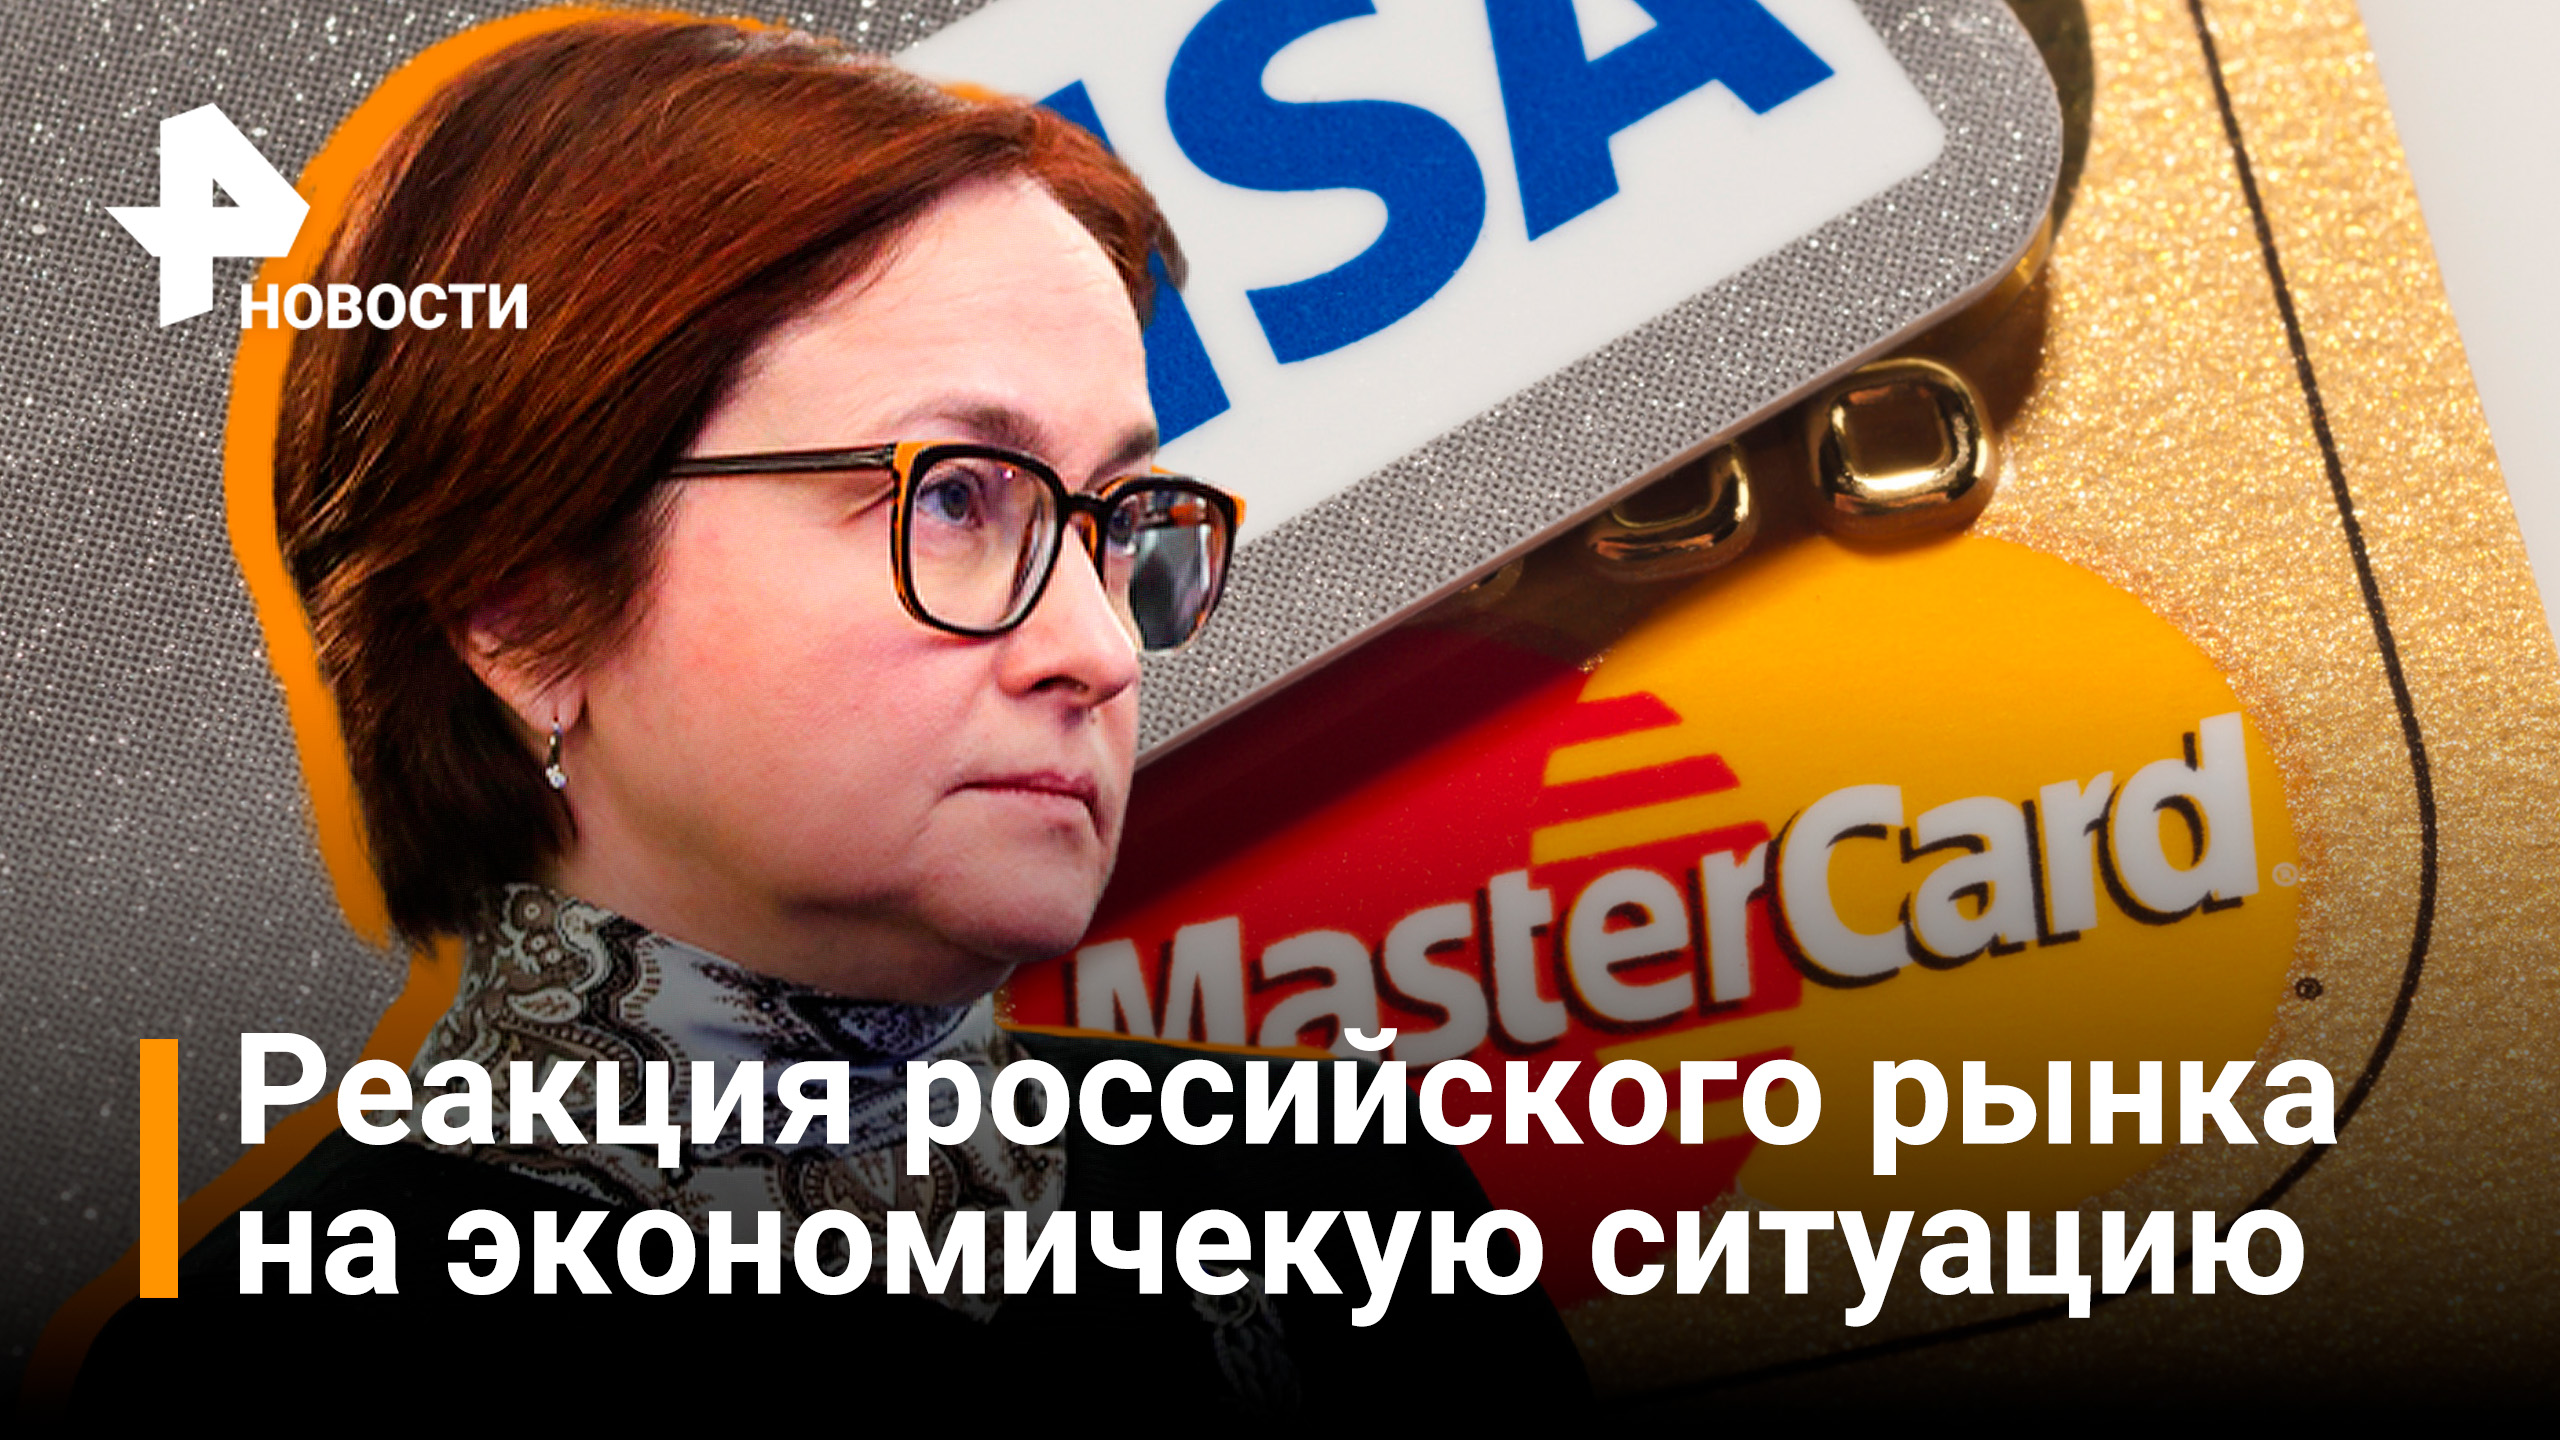 Как российский рынок отреагировал на экономическую ситуацию / РЕН Новости